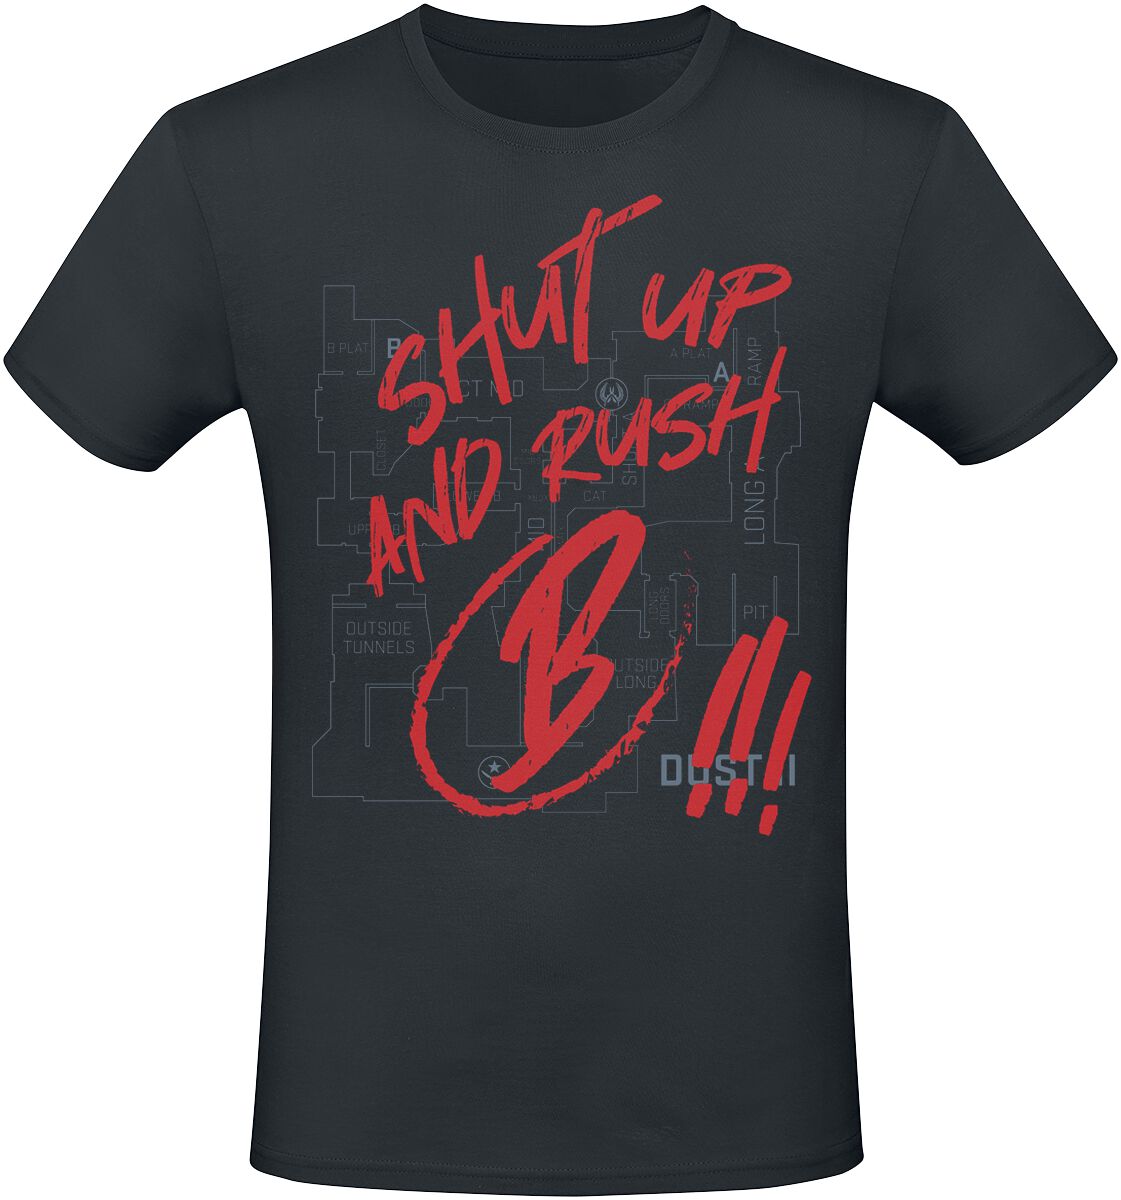 Counter-Strike - Gaming T-Shirt - 2 - Shut Up And Rush B !!! - S bis XXL - für Männer - Größe XL - schwarz  - EMP exklusives Merchandise!